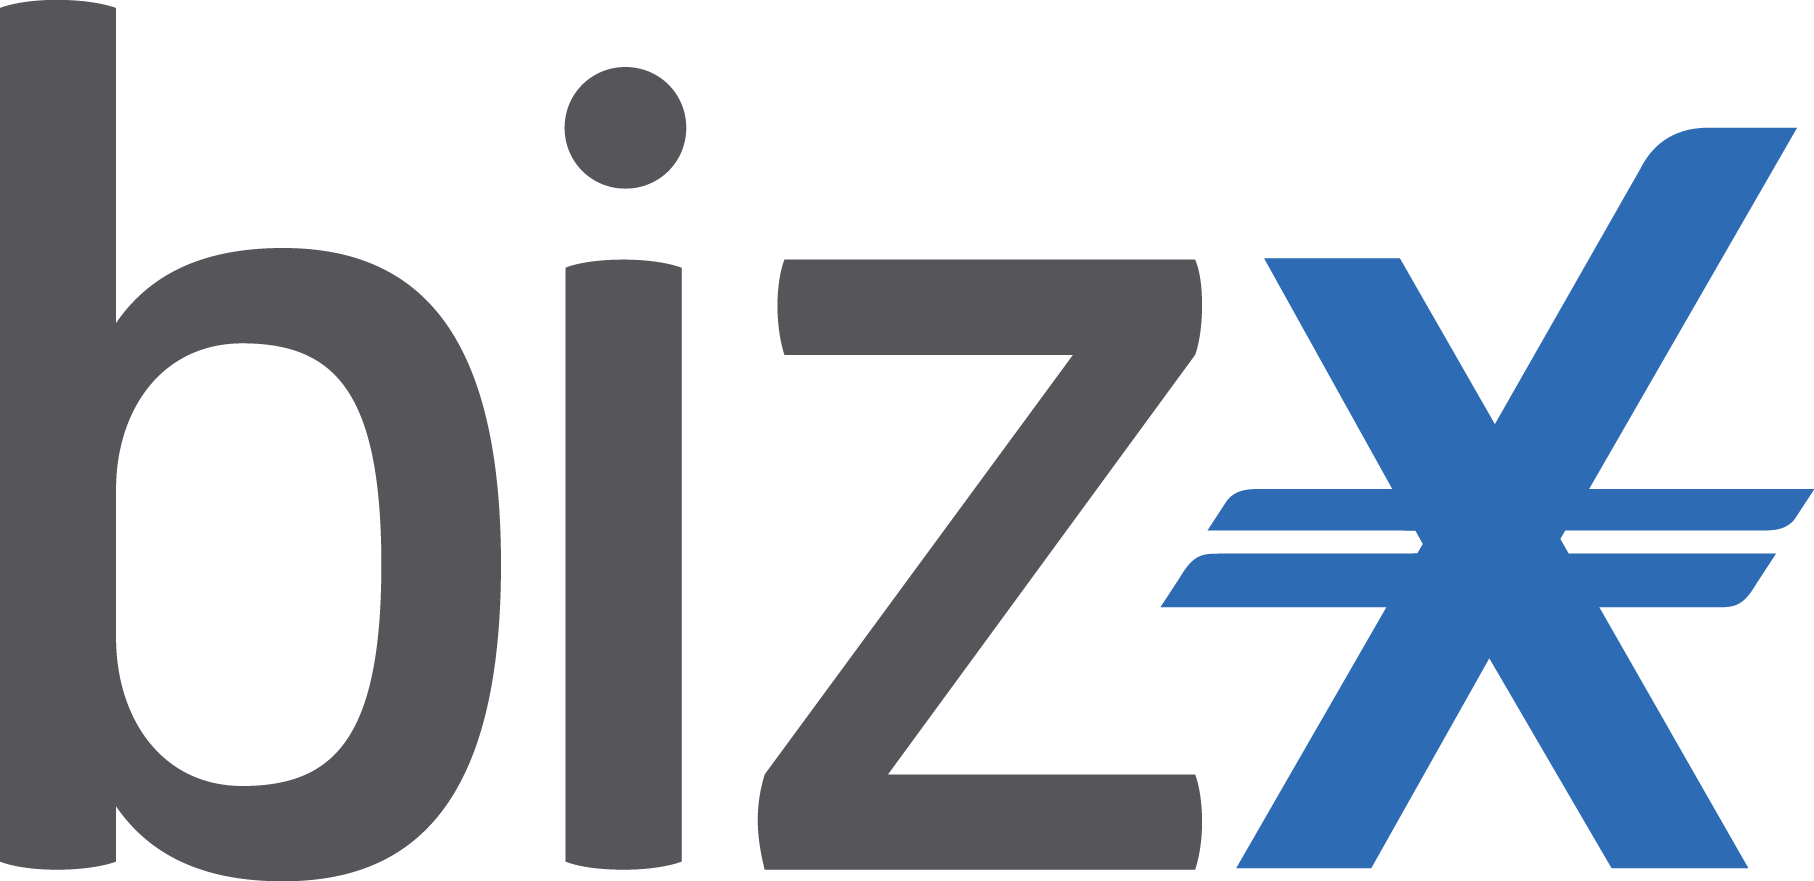 BizX Logo